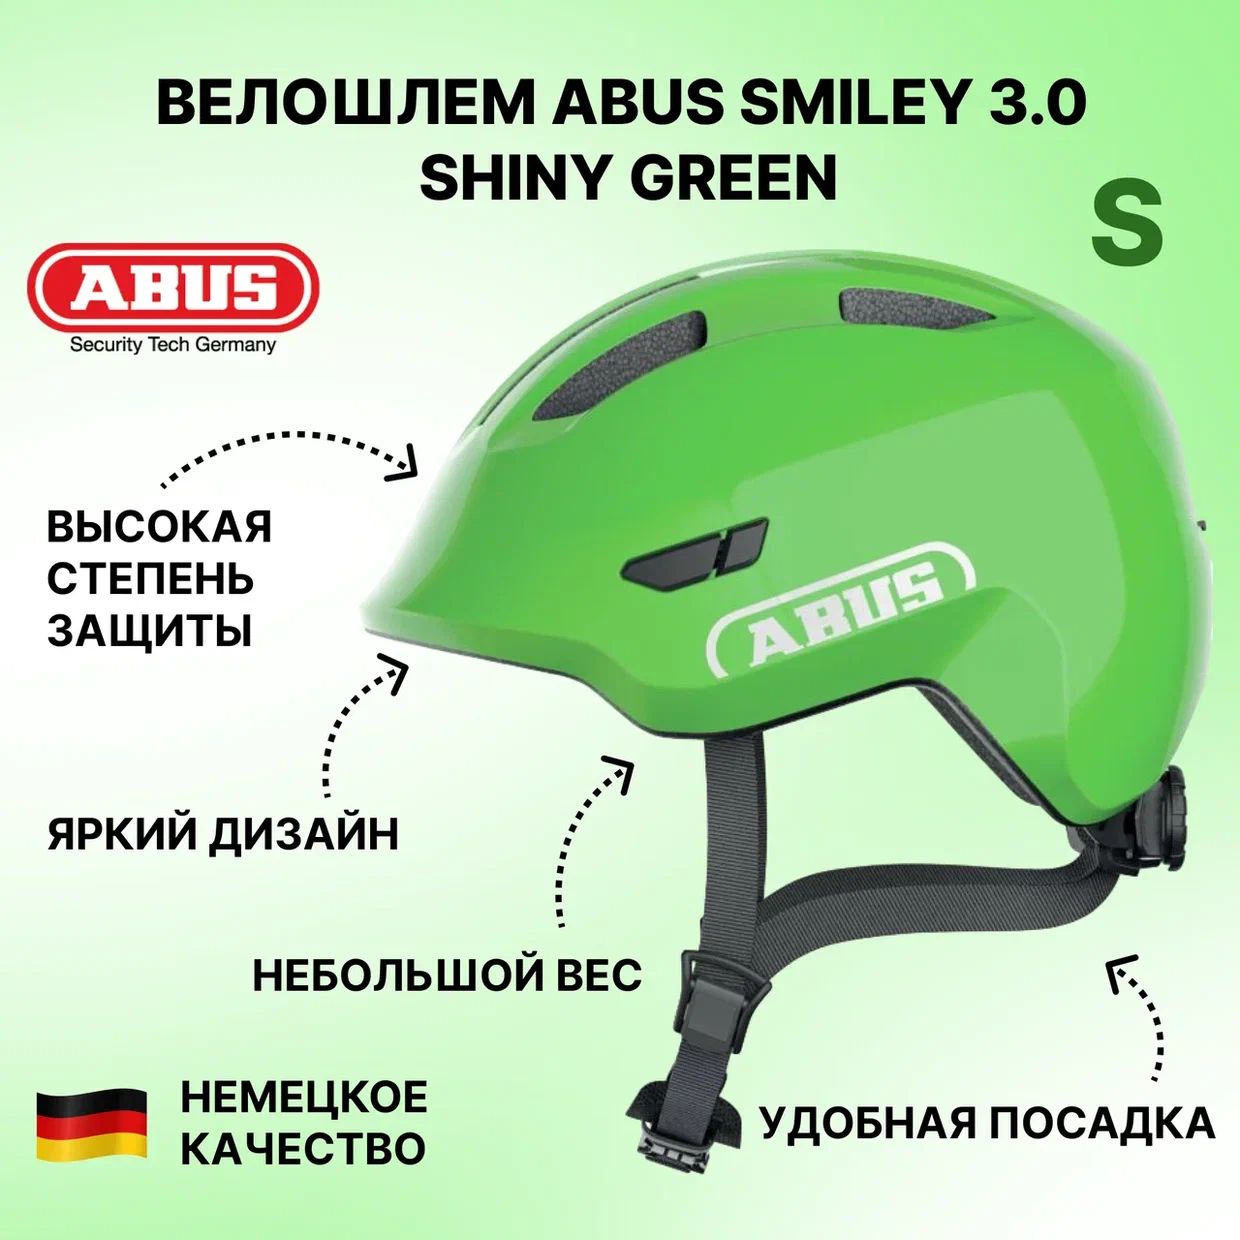 Велошлем ABUS Smiley 3.0 shiny green